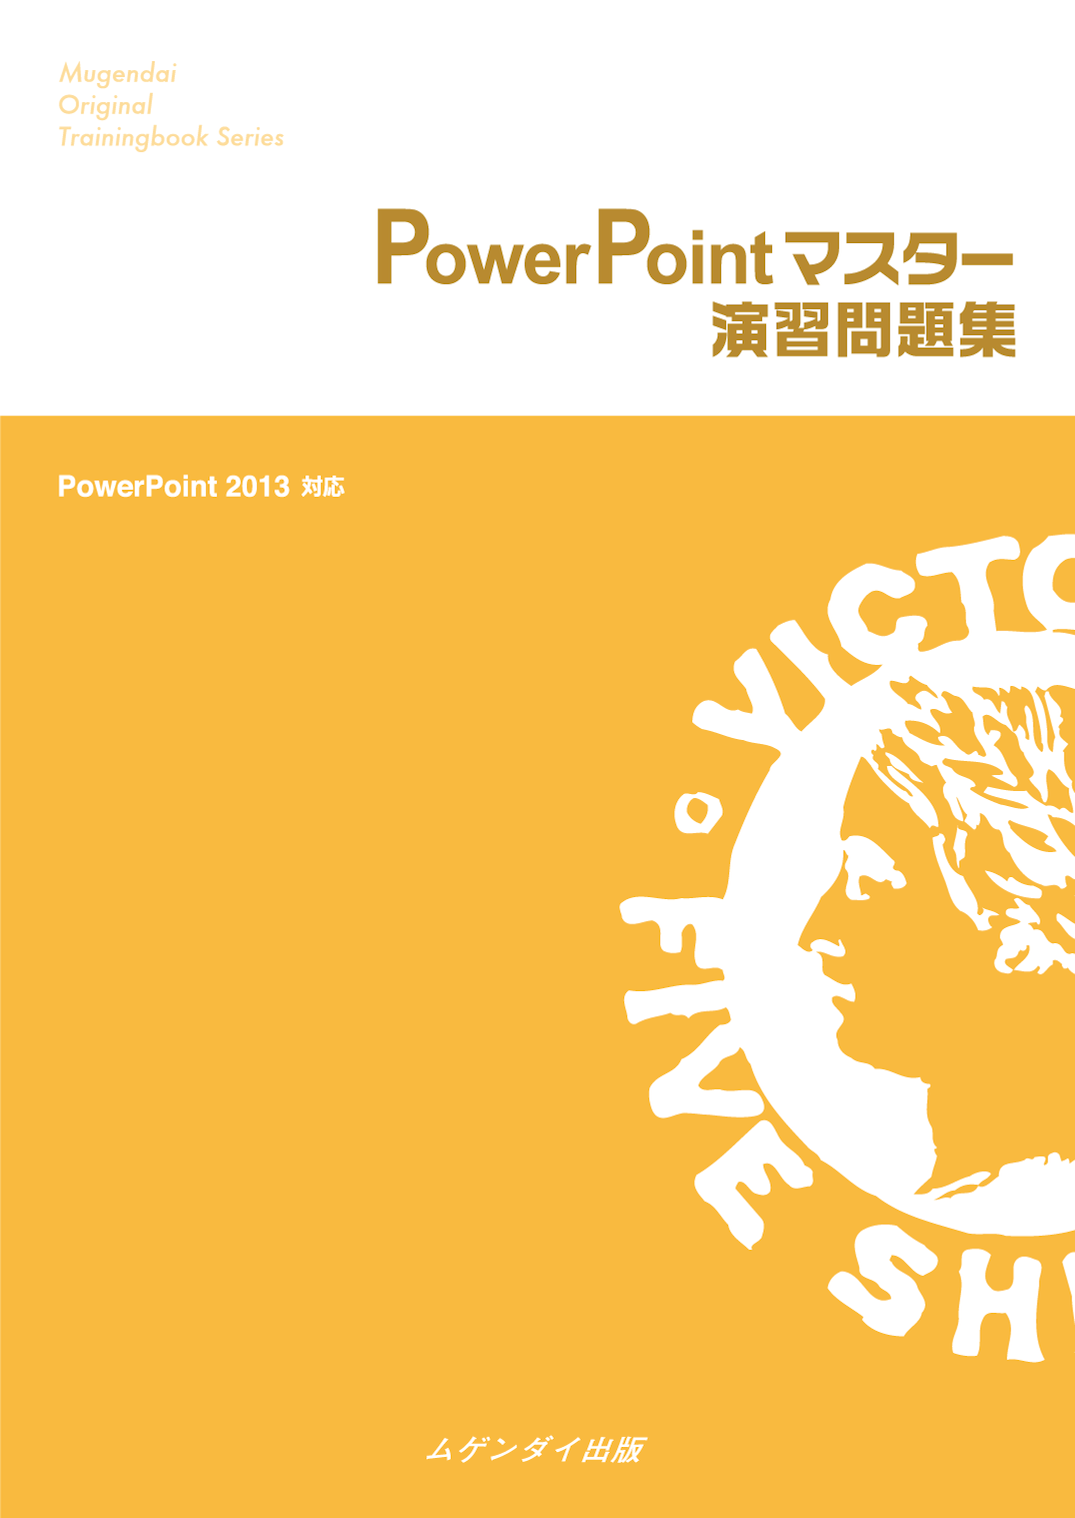 Power Point}X^[KW 2013 Ή